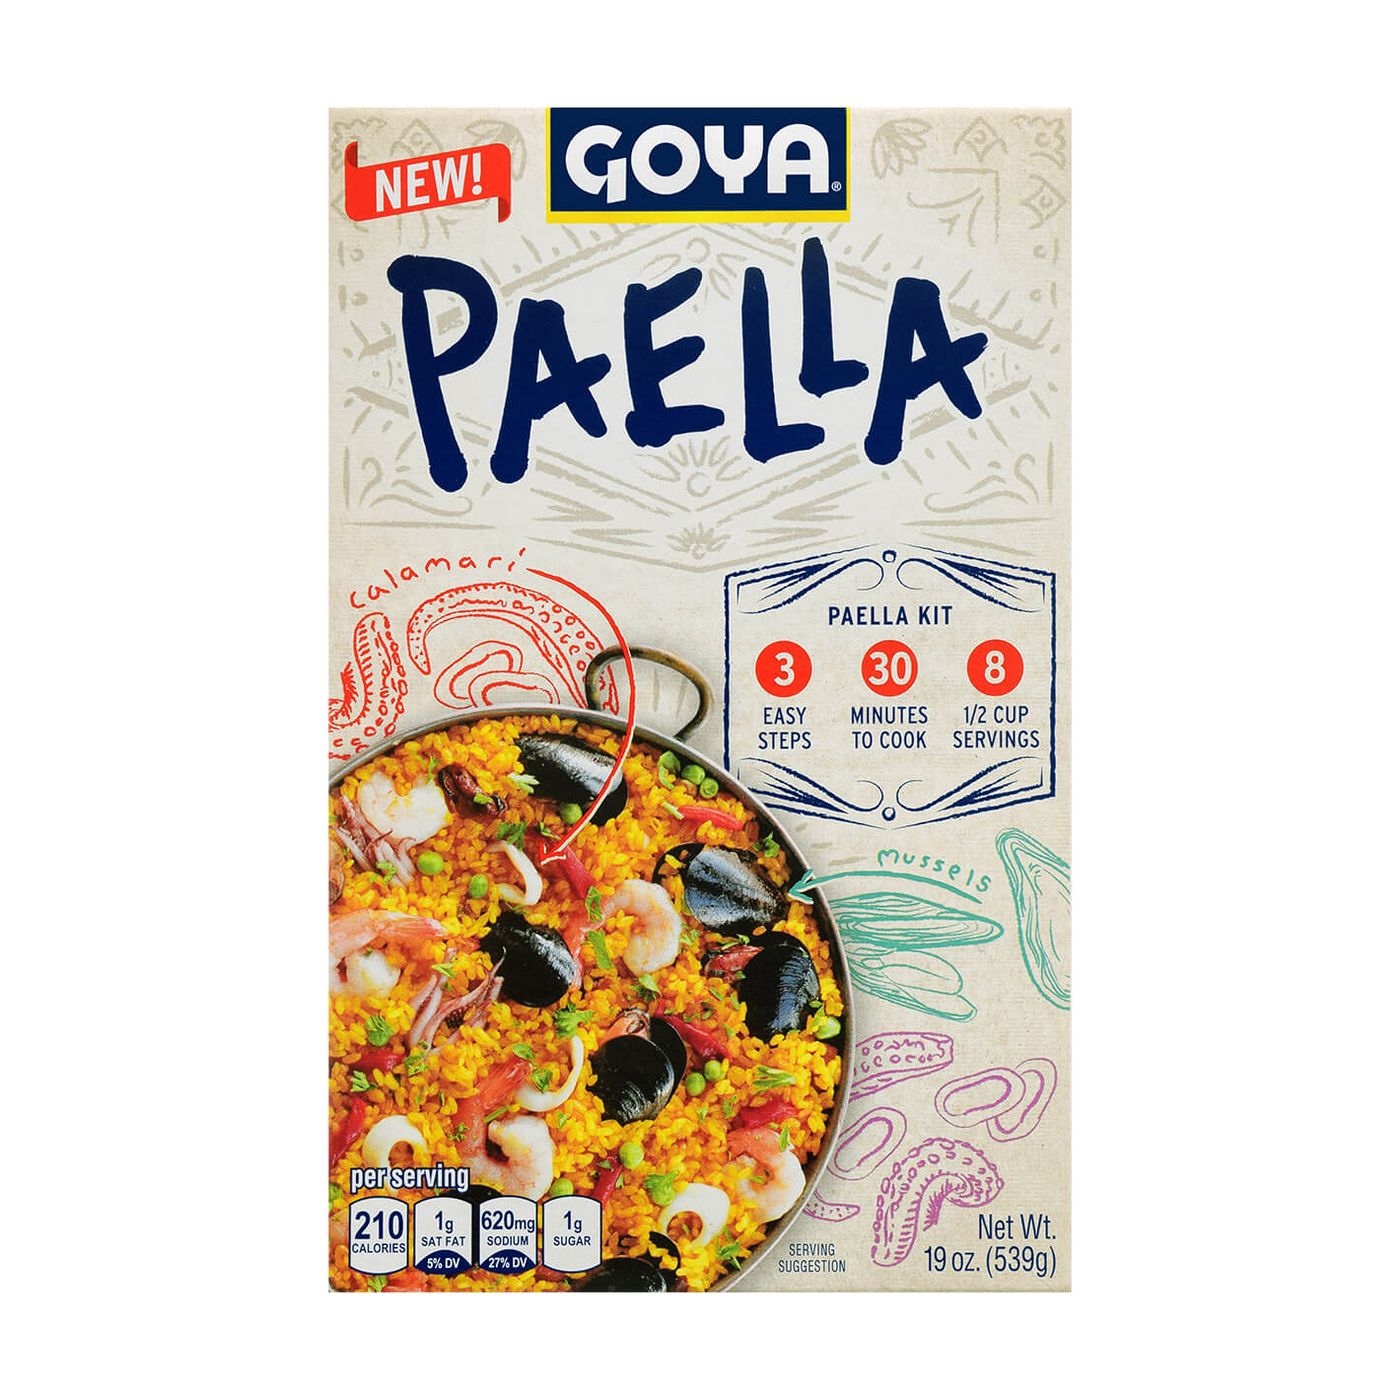   Goya Paella Dinner Kit